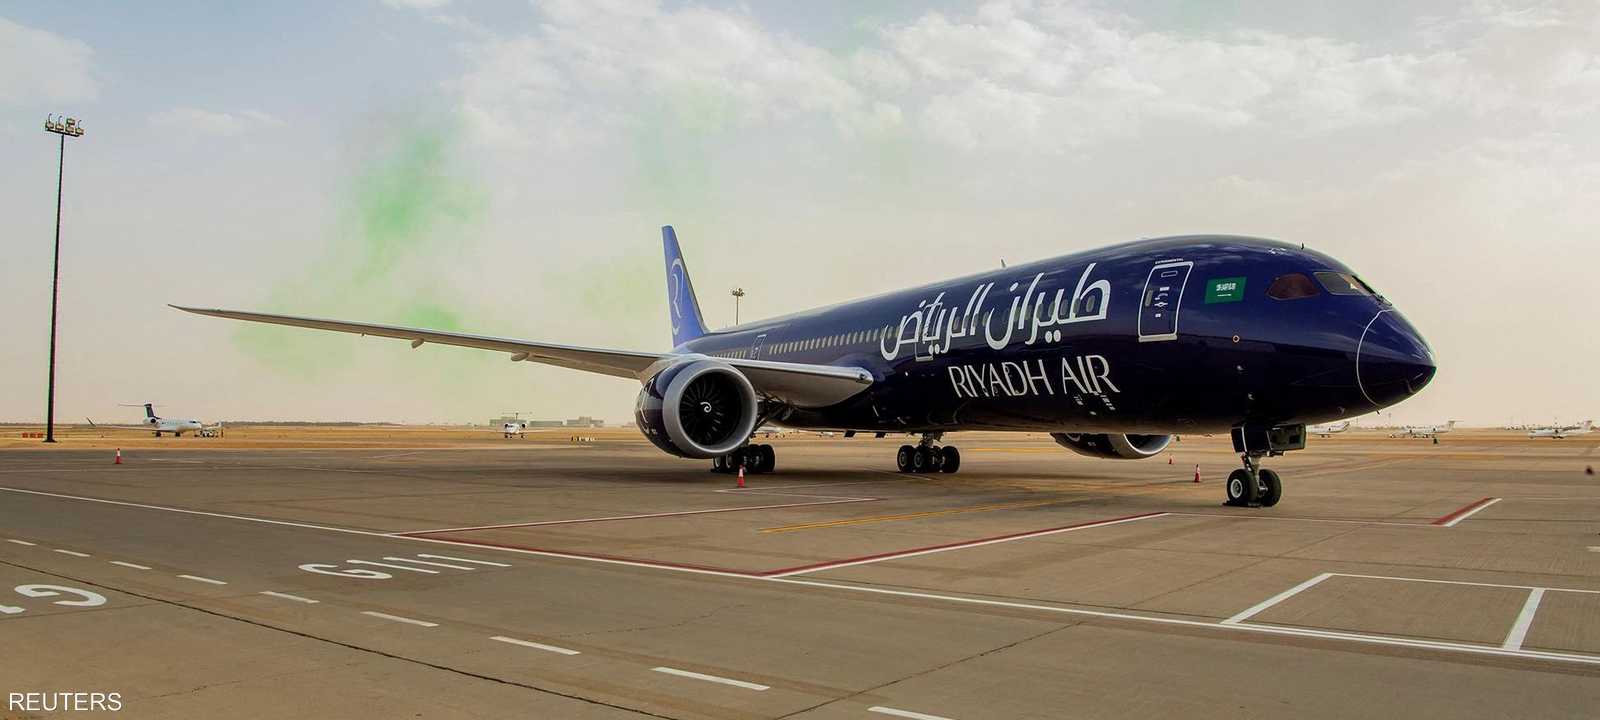 طائرة تابعة لشركة طيران الرياض